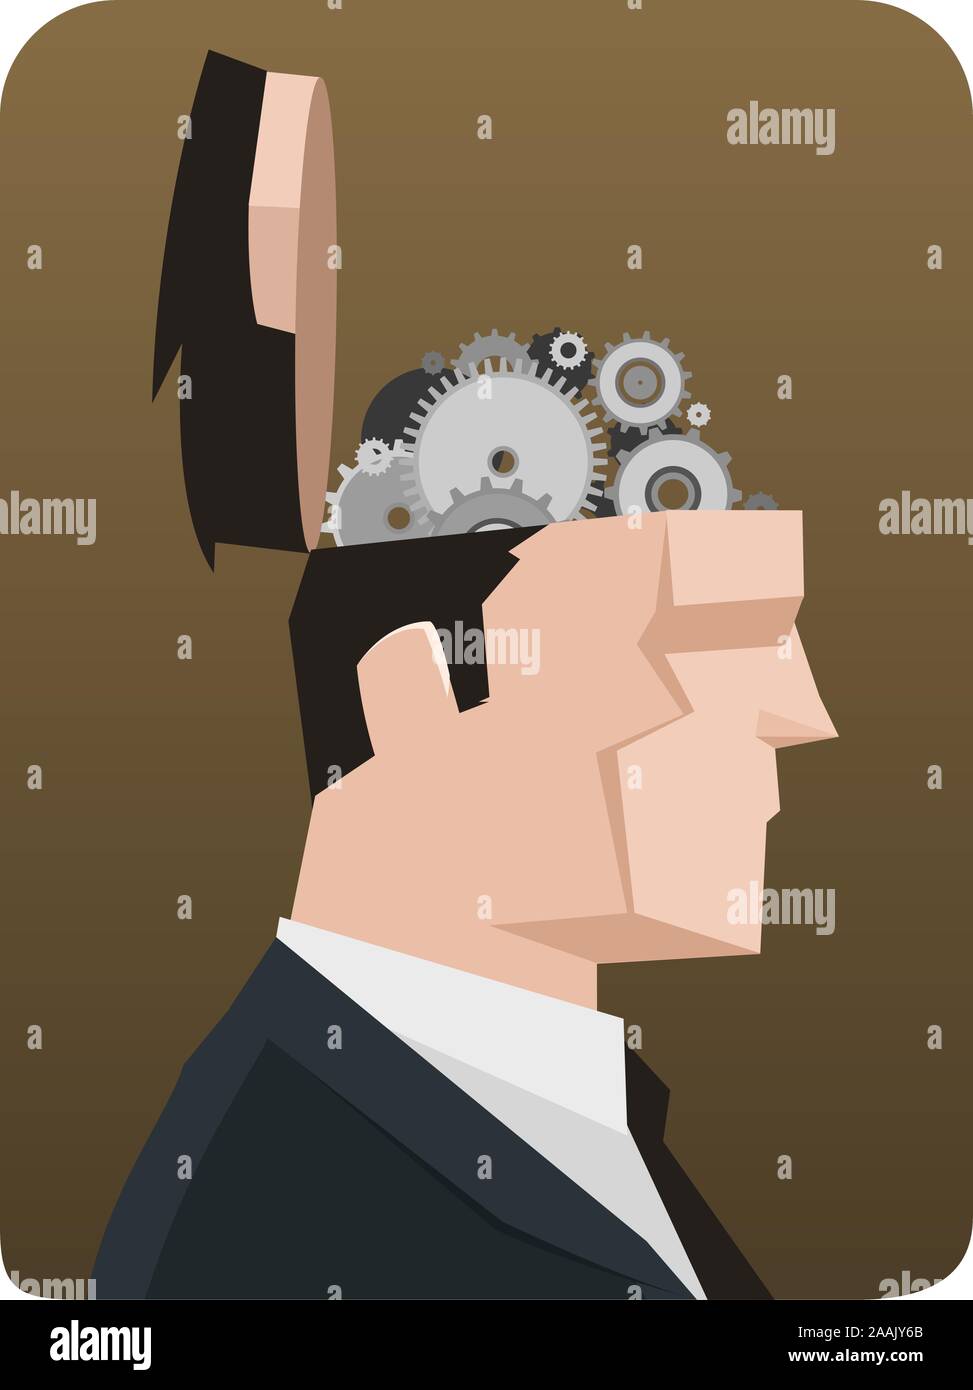 Geschäftsmann Gedanken denken Kupplungsmechanismus. Vector Illustration Cartoon, mit geöffnetem Geschäftsmann Kopf, Mechanismus System. Stock Vektor